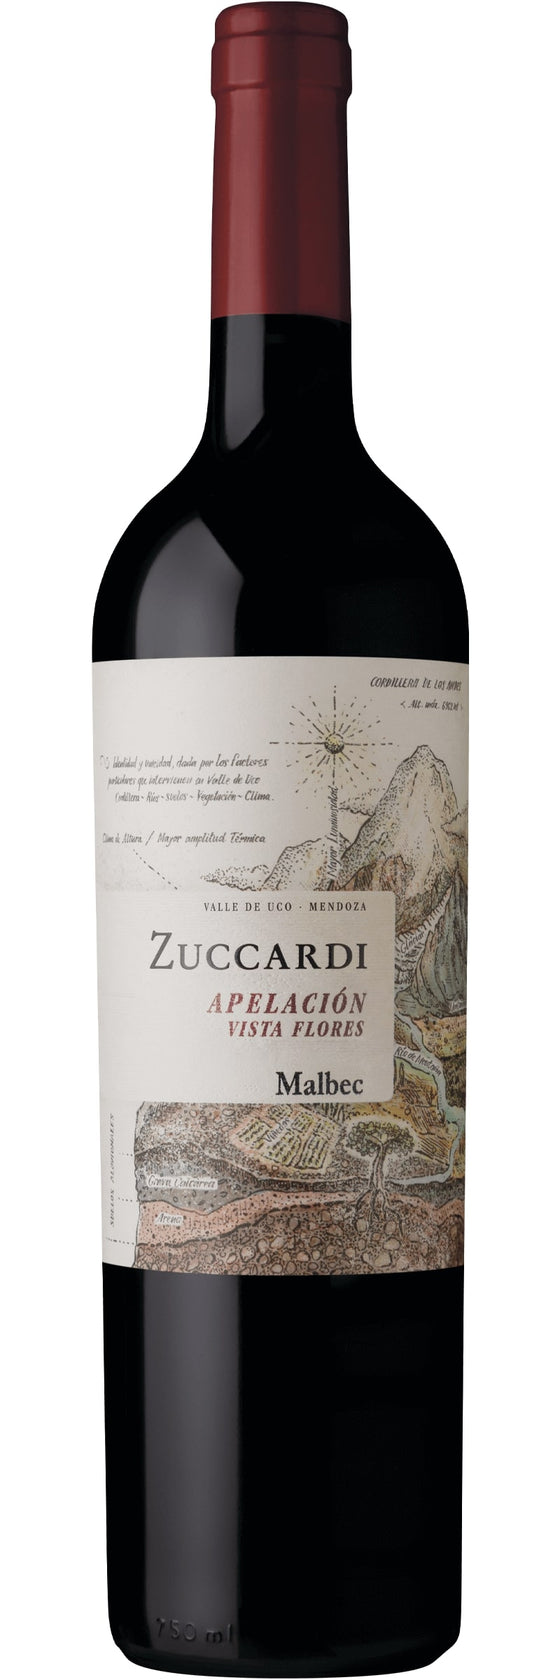 Zuccardi Apelacion Malbec Magnum 2017